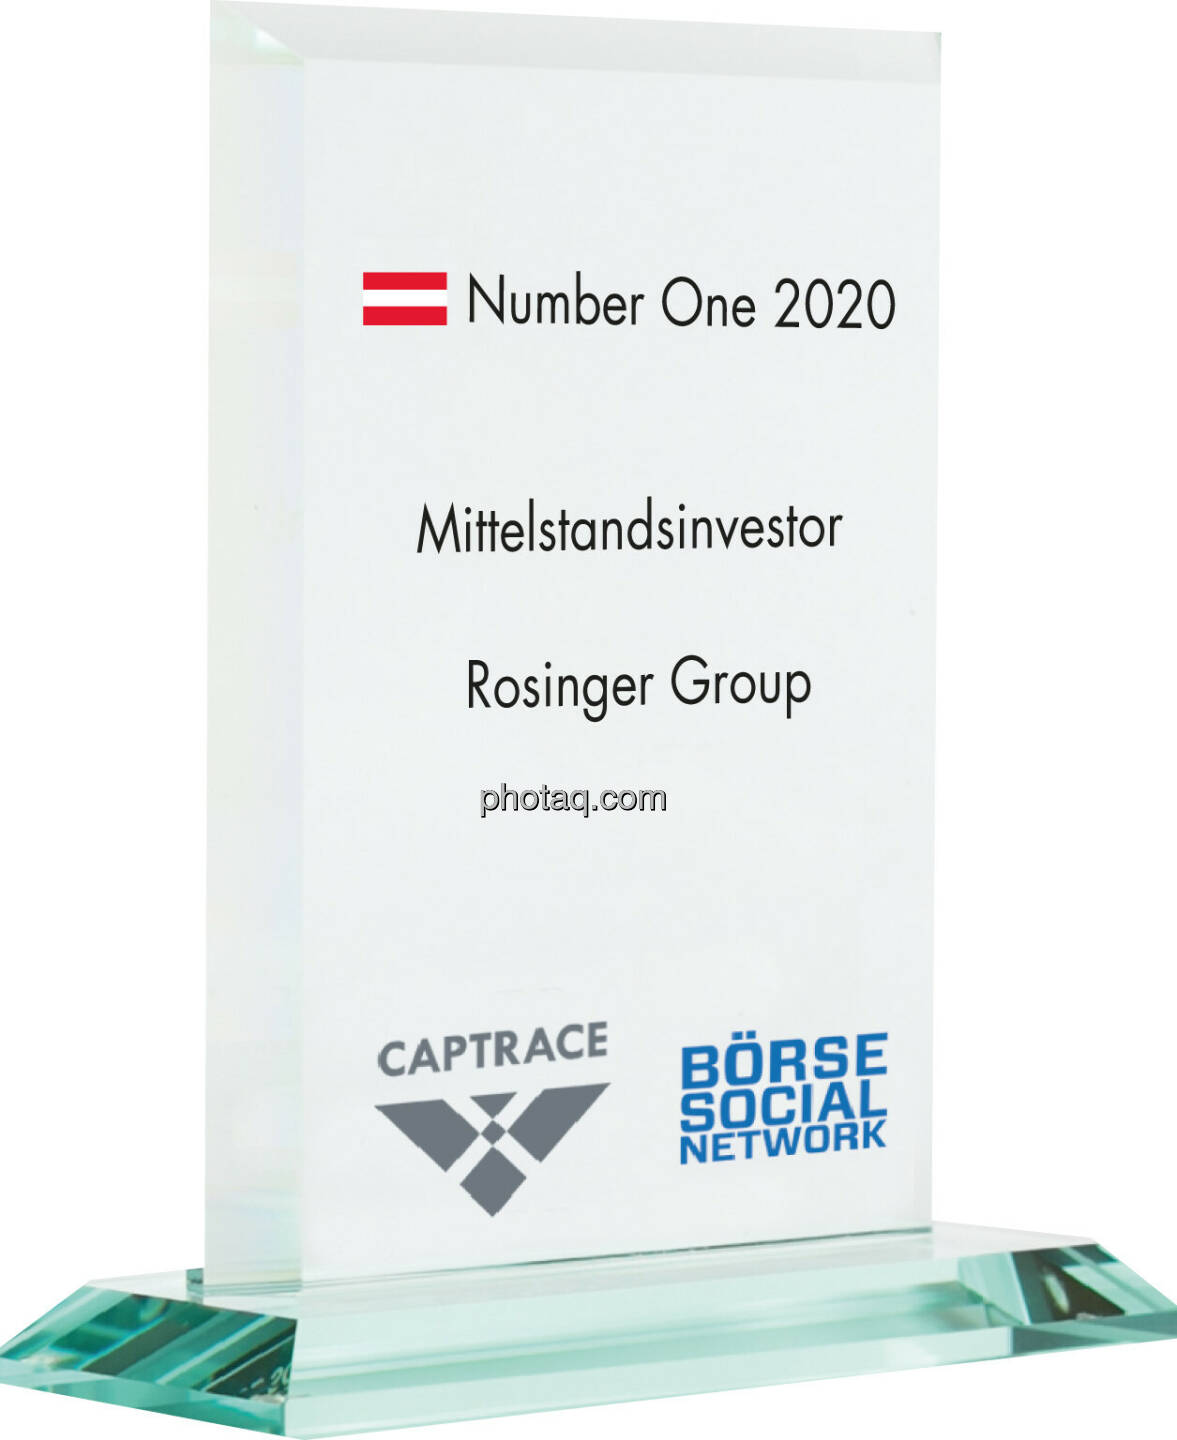 Number One Awards 2020 - Mittelstandsinvestor Rosinger Group